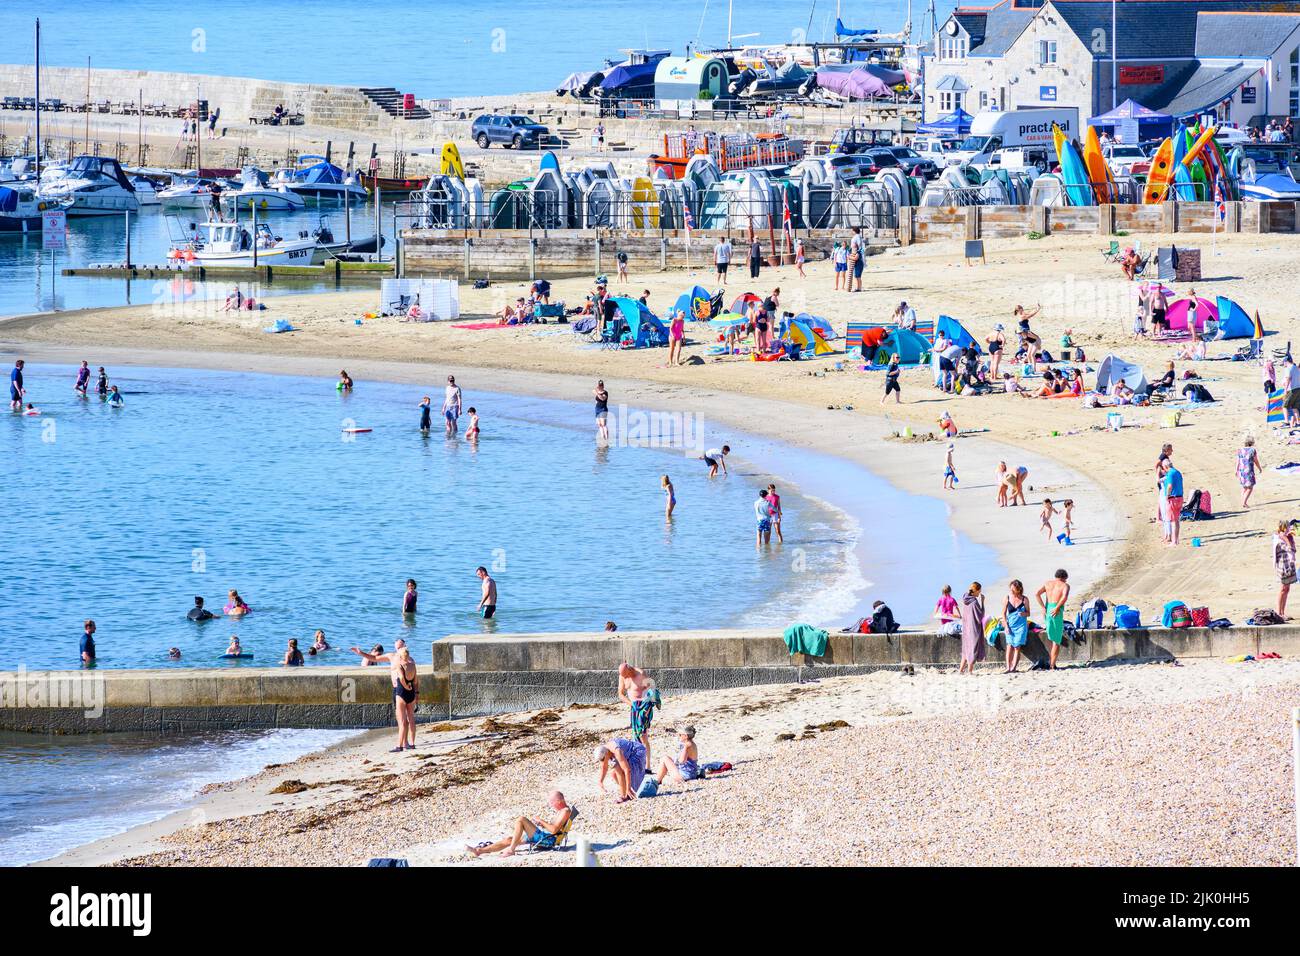 Lyme Regis, Dorset, Reino Unido. 29th de julio de 2022. Clima en el Reino Unido: Las multitudes acuden a la playa en el centro turístico costero de Lyme Regis para disfrutar de un sol abrasador y caluroso. Las familias, los turistas y los que buscan sol salieron temprano para asegurarse un lugar en la playa para empaparse del tiempo soleado, ya que hace un bienvenido regreso este fin de semana. Crédito: Celia McMahon/Alamy Live News Foto de stock